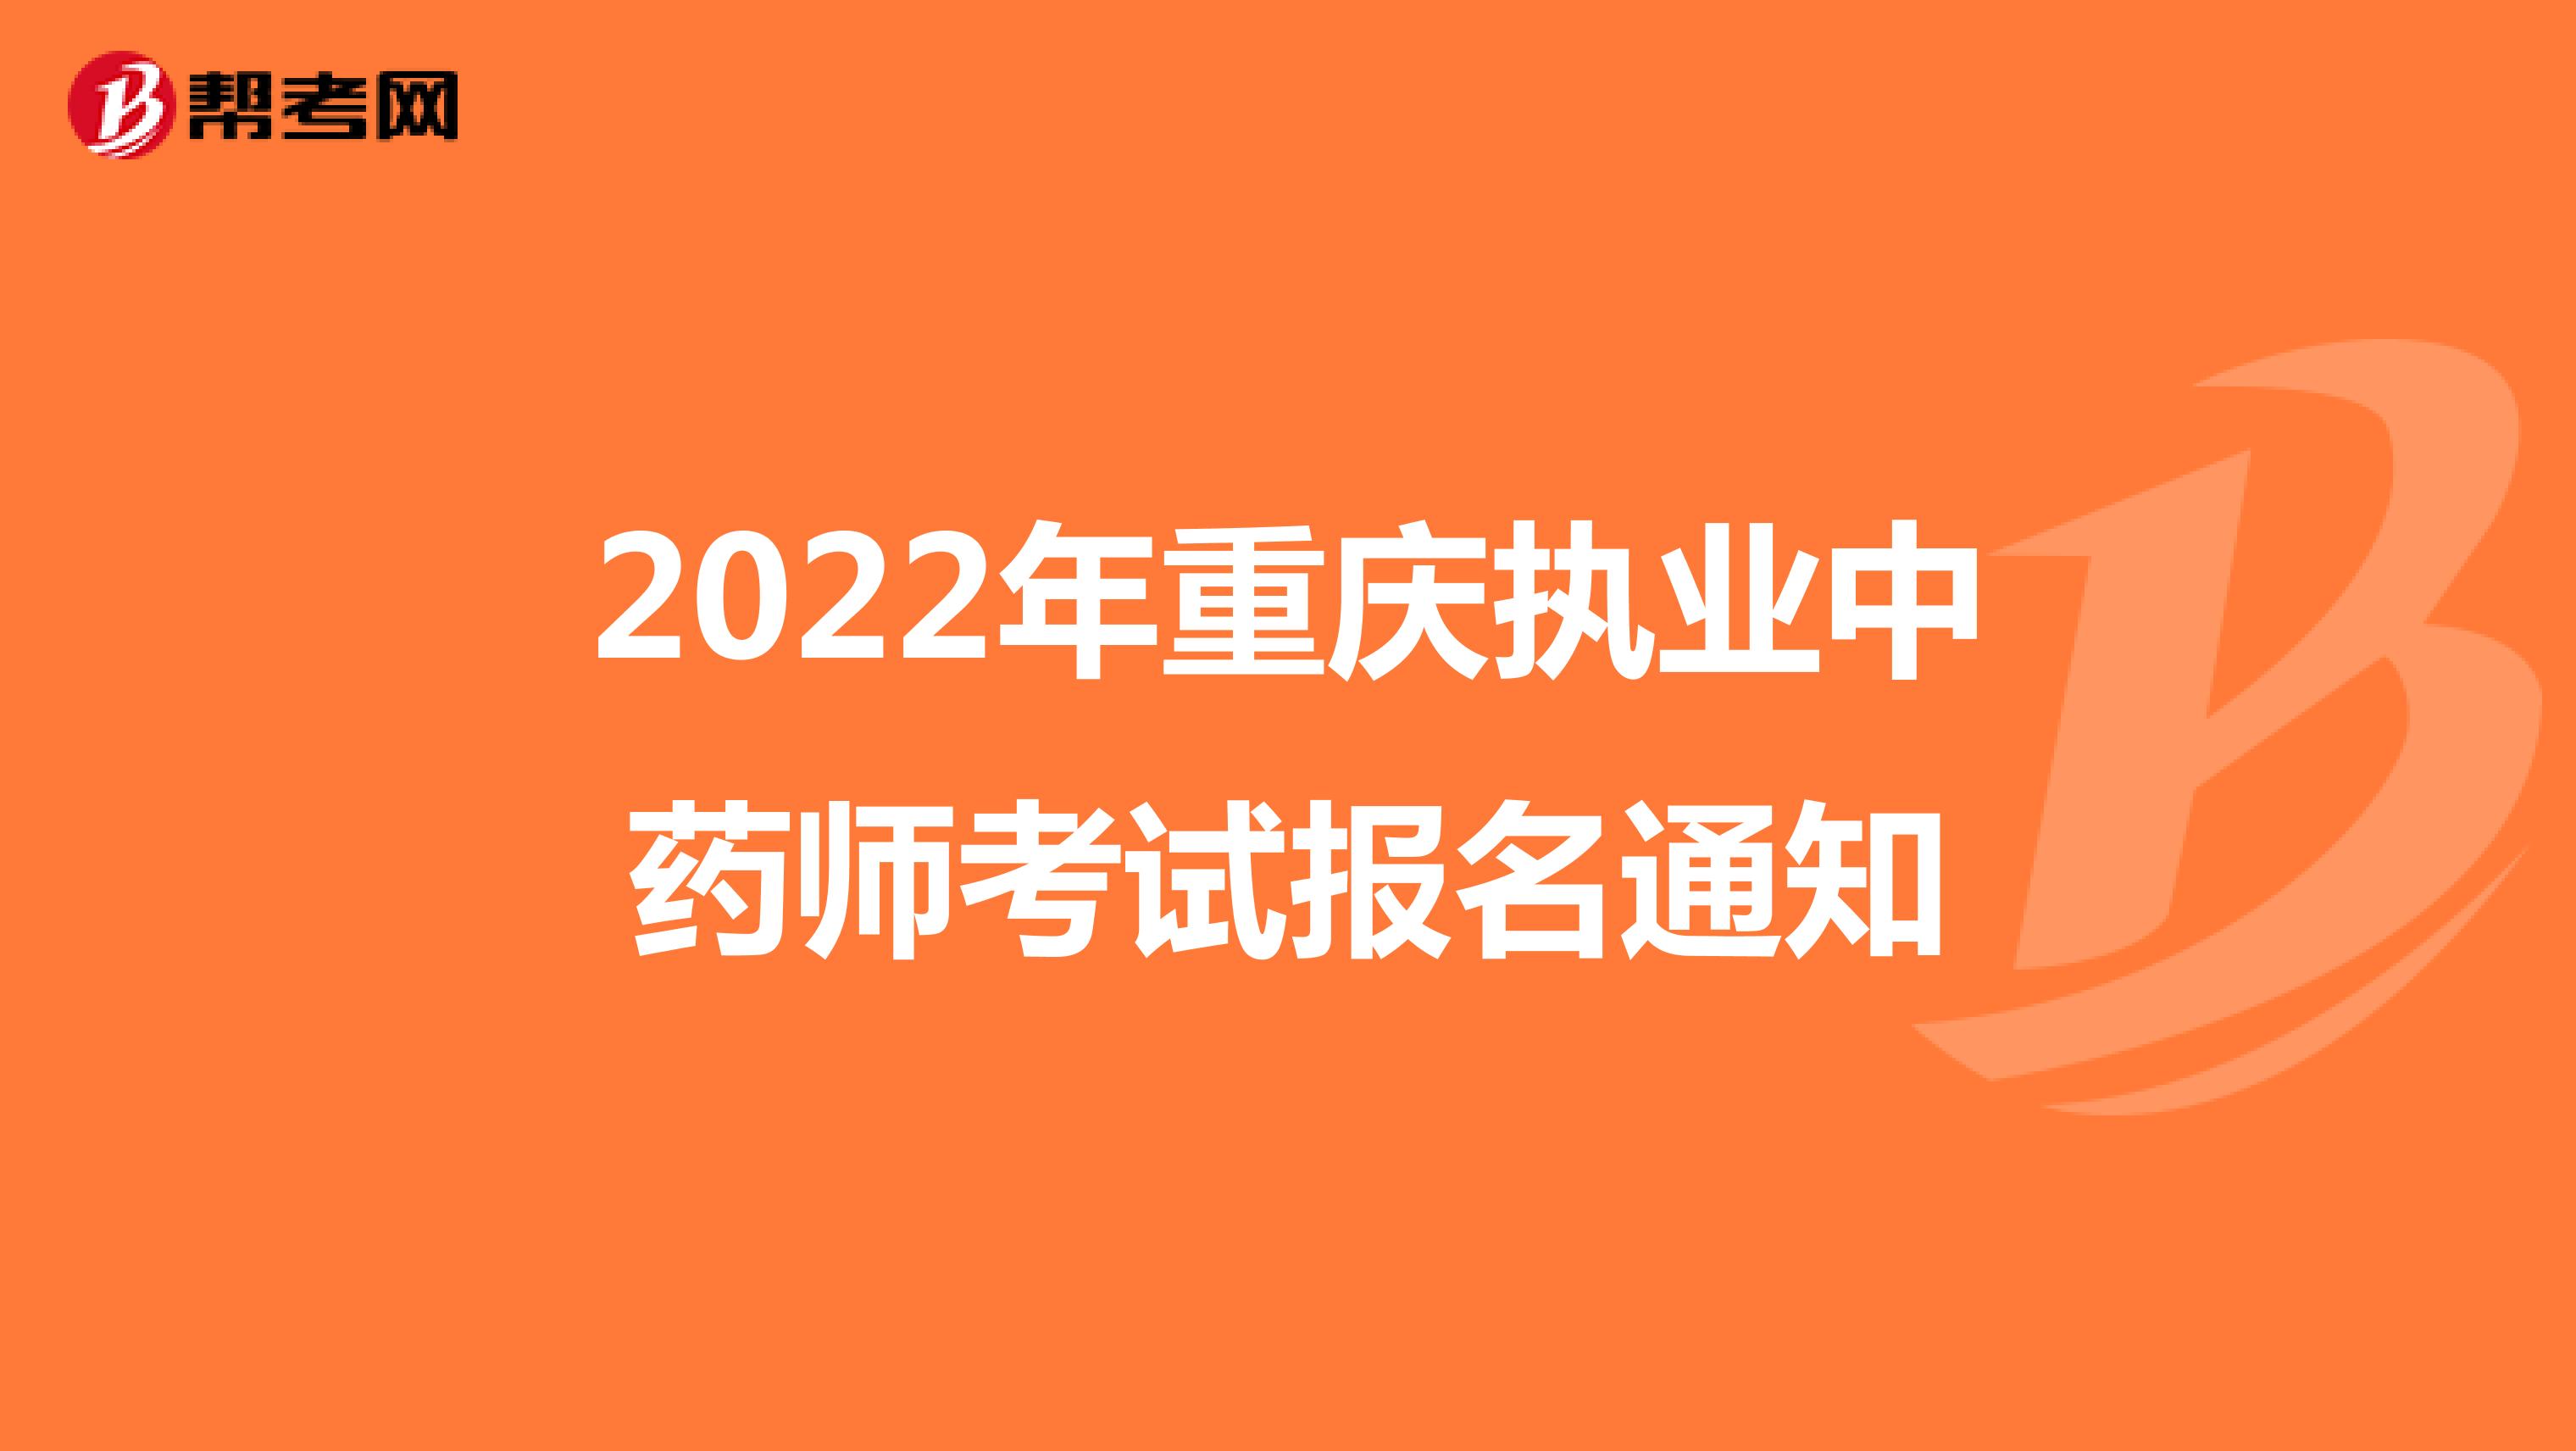 2022年重慶執業中藥師考試報名通知